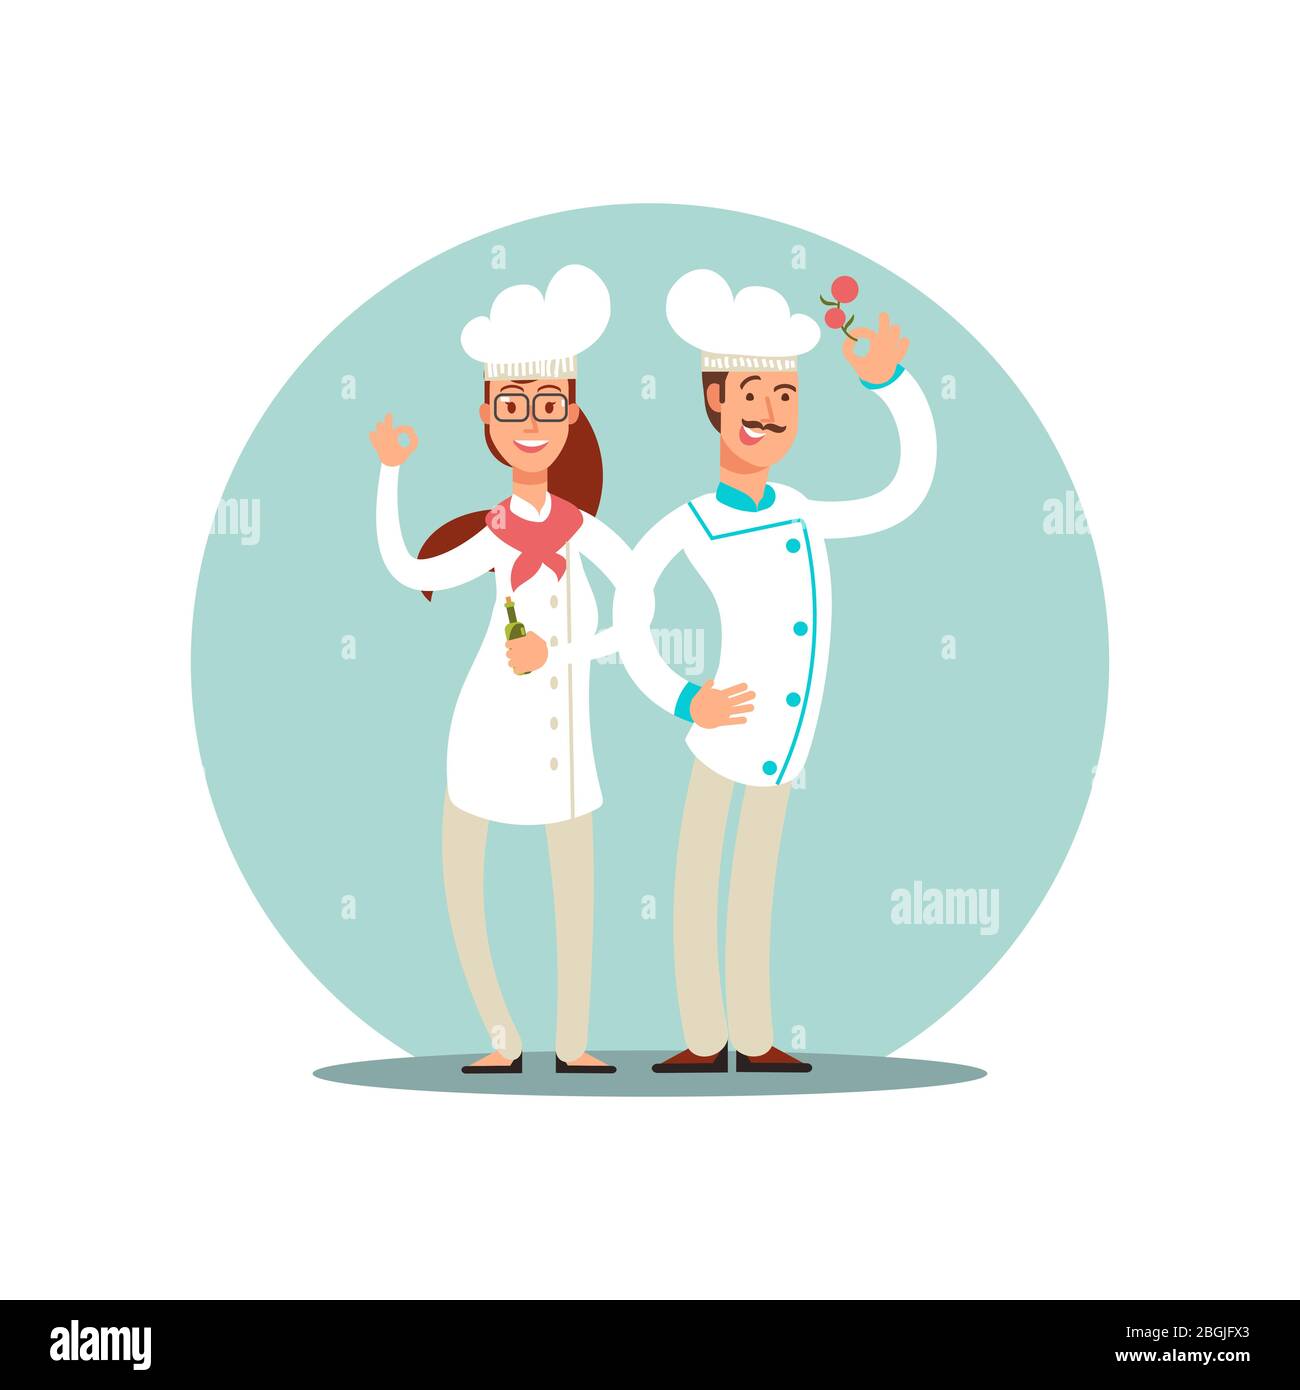 Des chefs souriants de restaurant, des cuisiniers professionnels dans la cuisine uniforme des personnages plats icône isolée sur l'illustration blanche Illustration de Vecteur